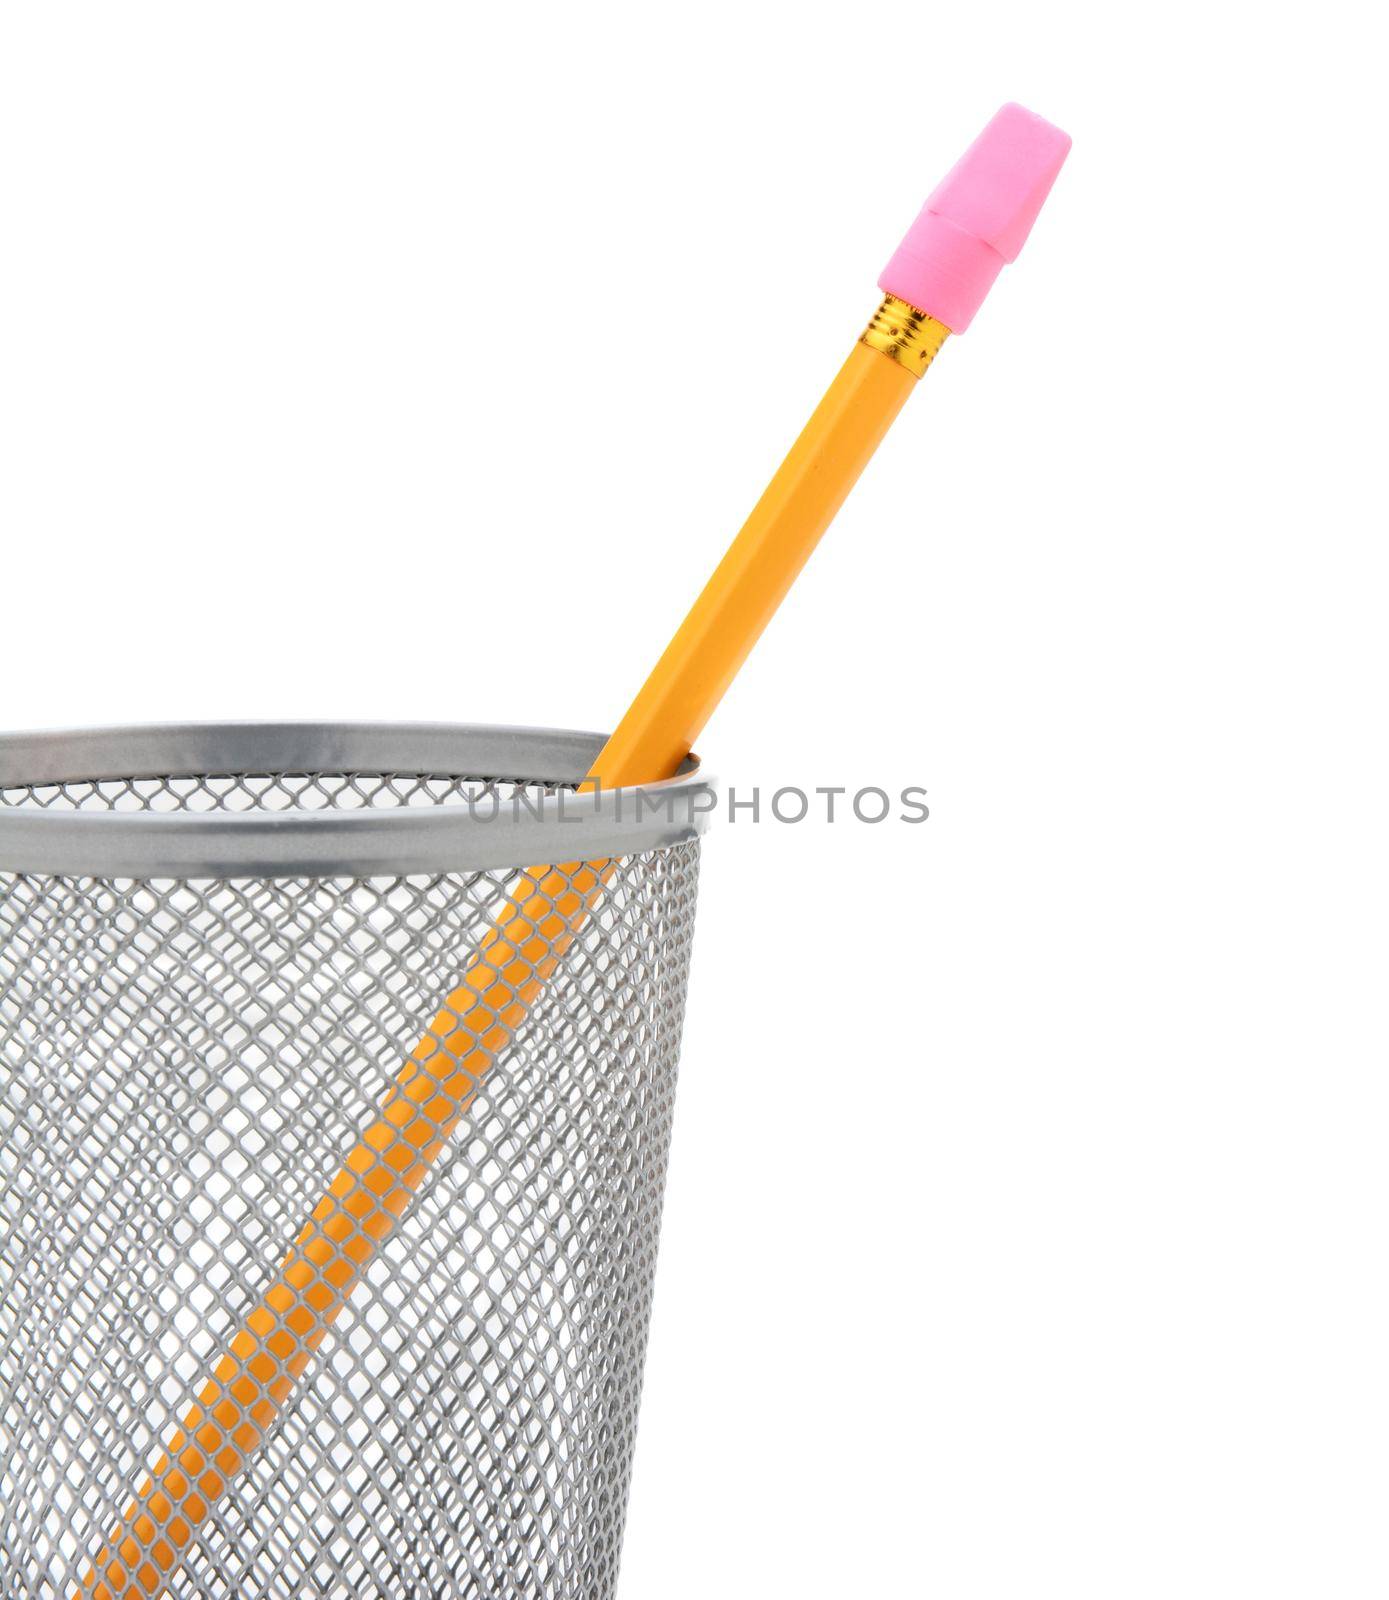 Pencil in Pencil Cup by sCukrov